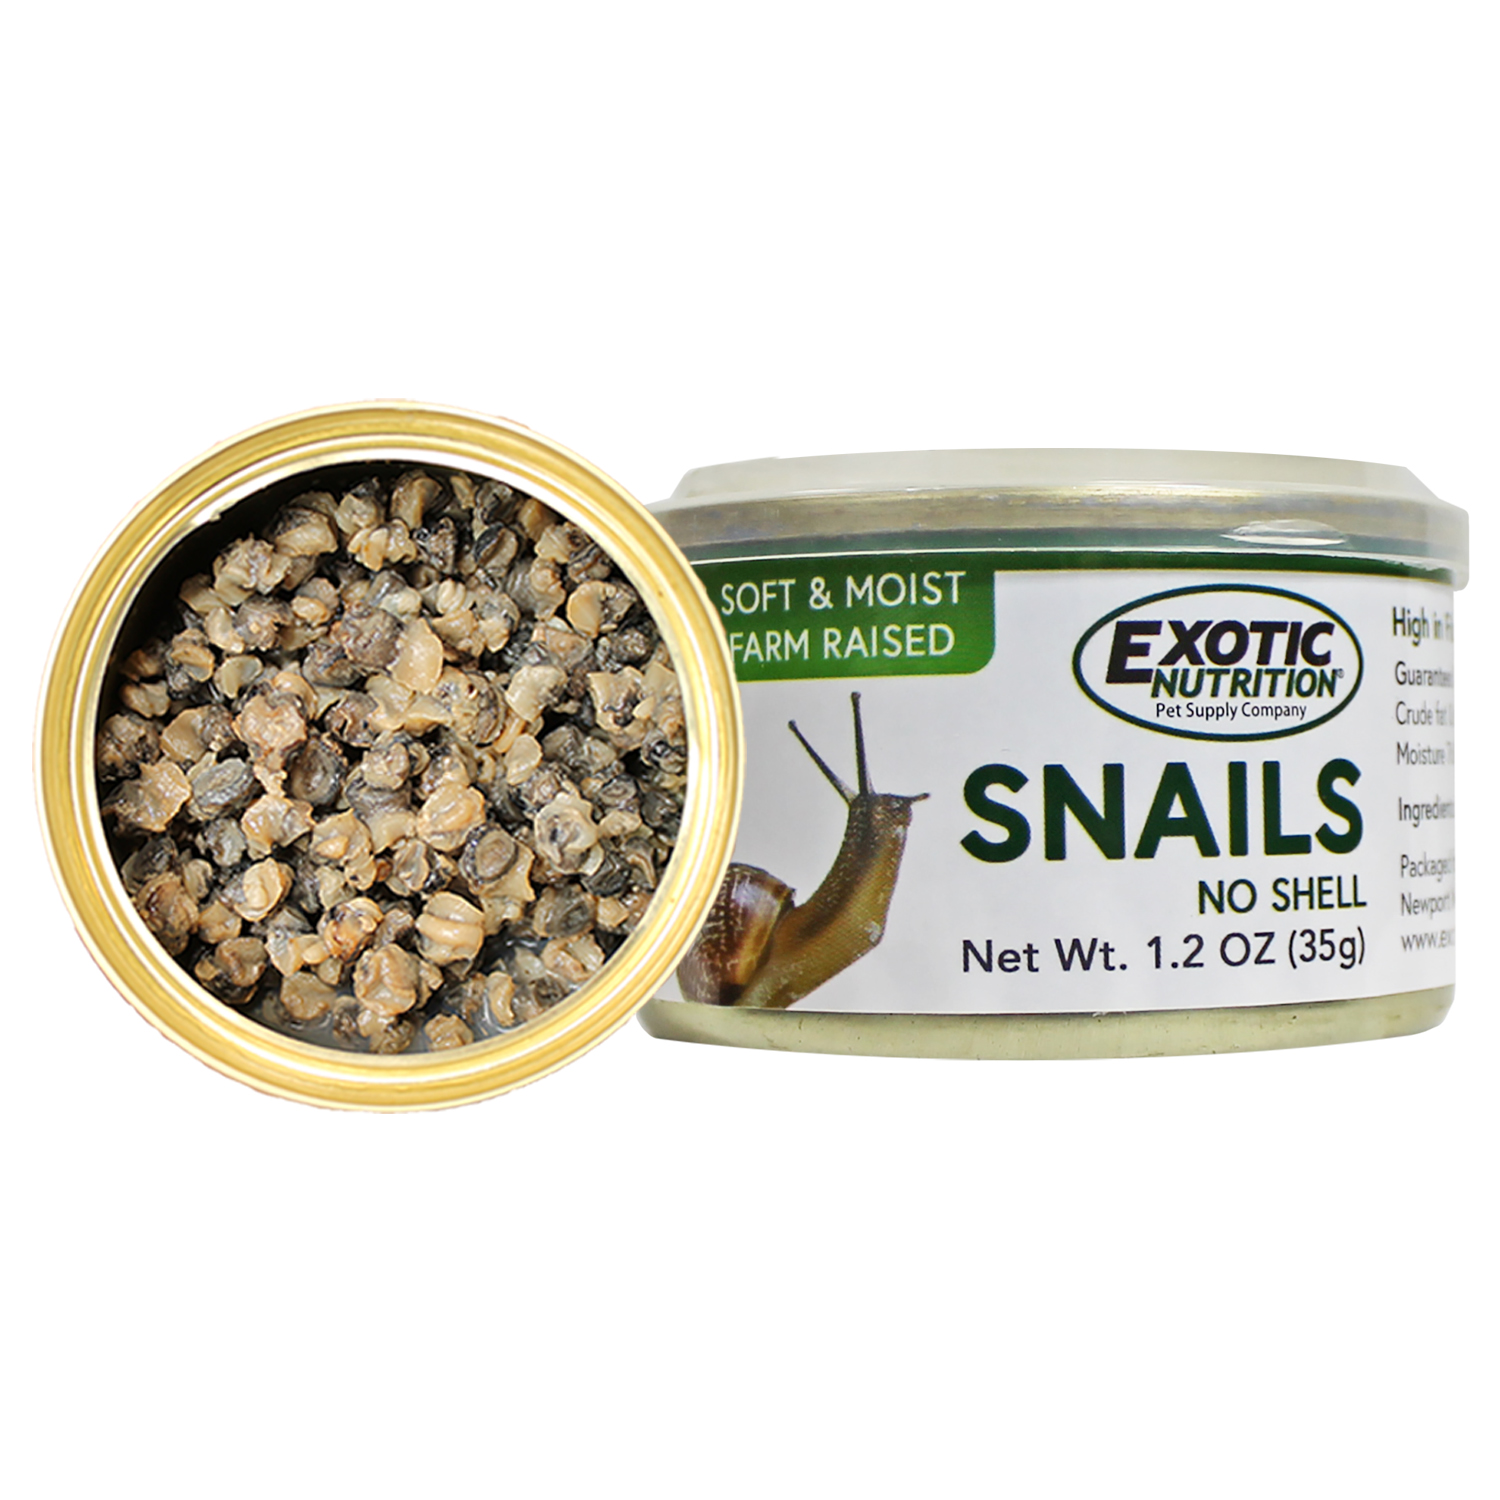 do snails like dog food and cat food